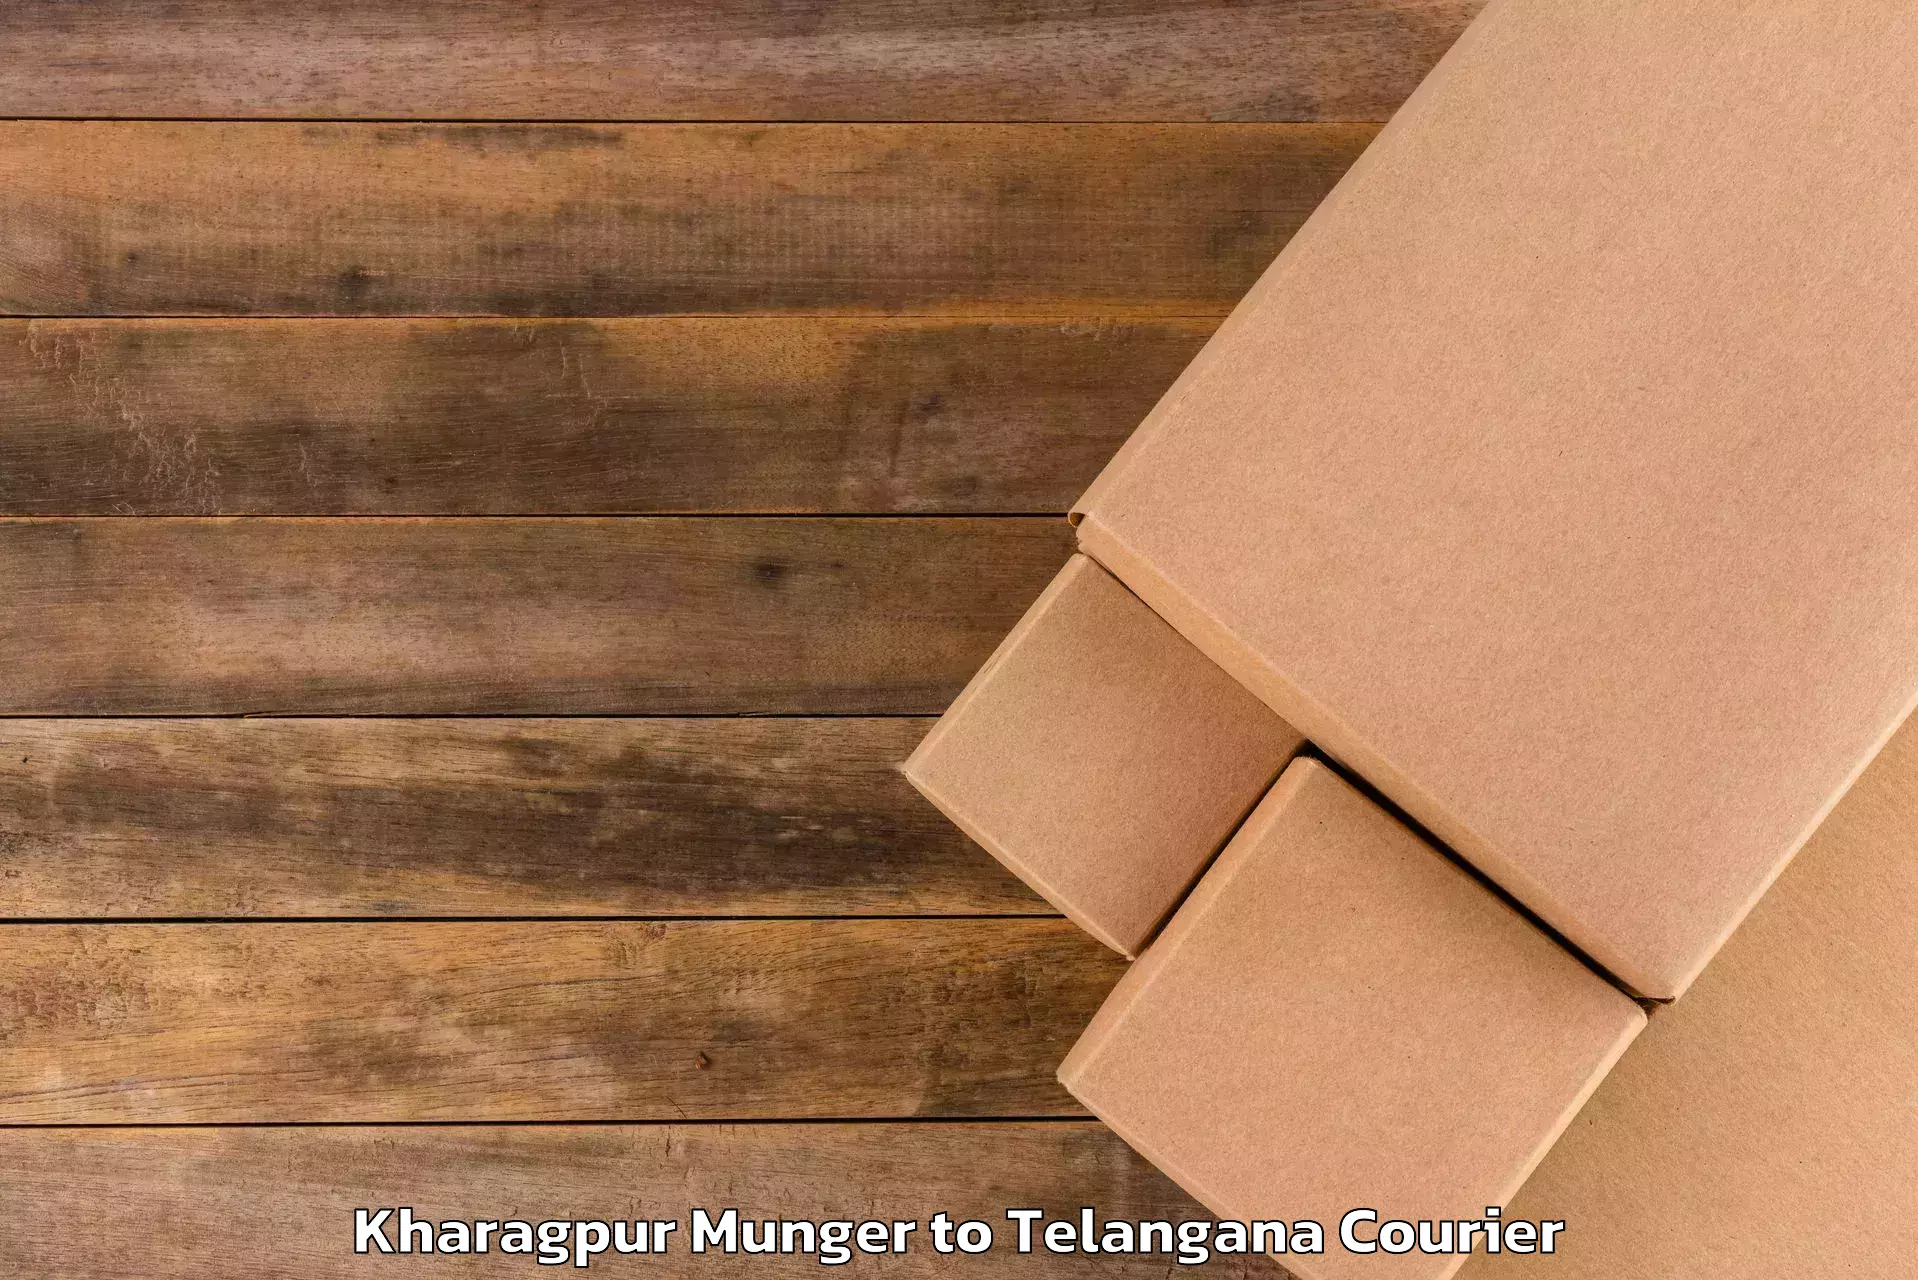 Hassle-free luggage shipping Kharagpur Munger to Eligedu